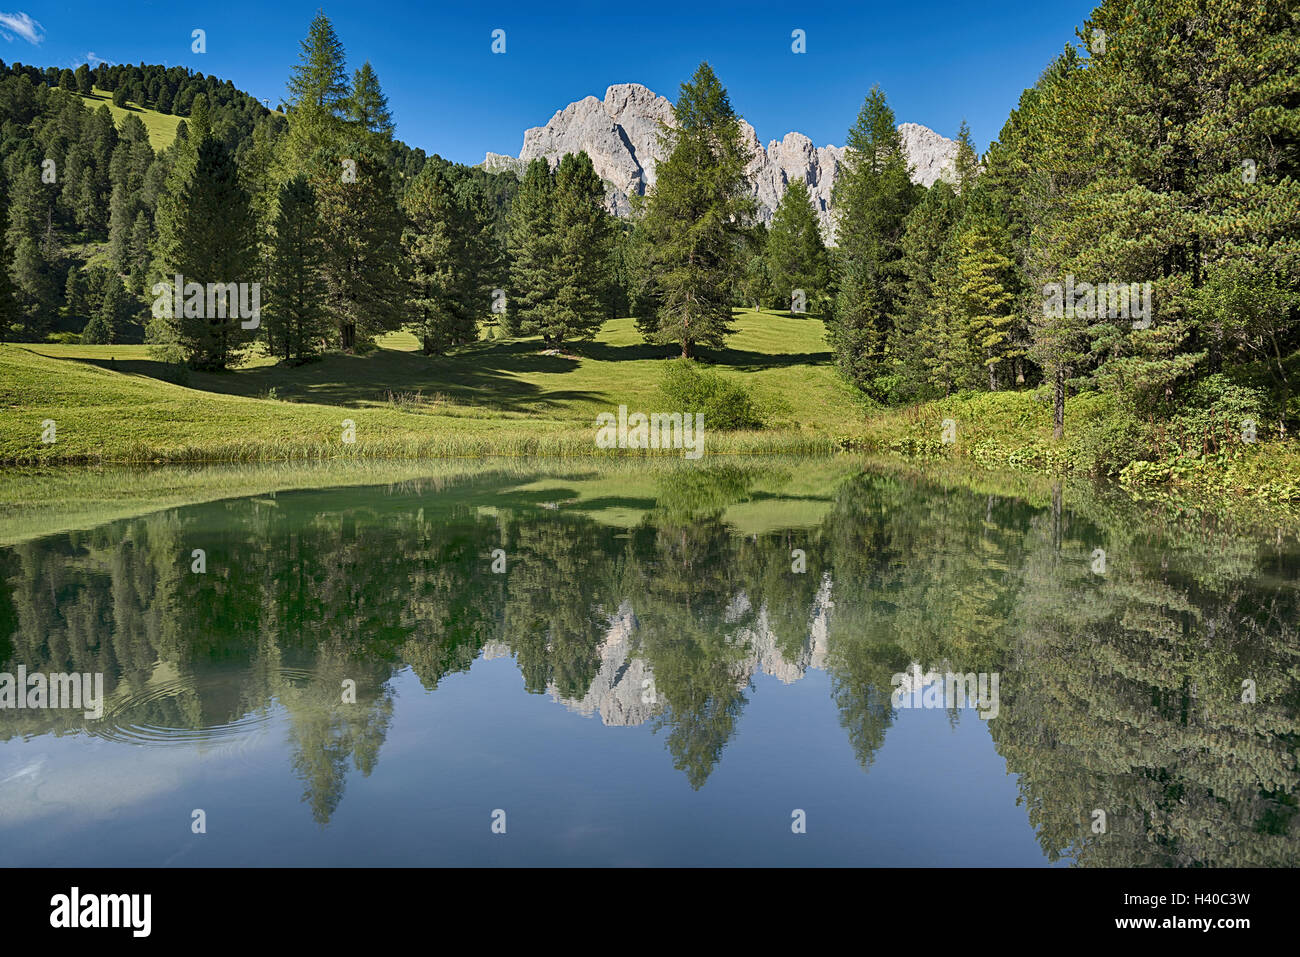 Lac dans la forêt avec les montagnes en arrière-plan, saison estivale - Trentin-Haut Adige, Dolomites Banque D'Images